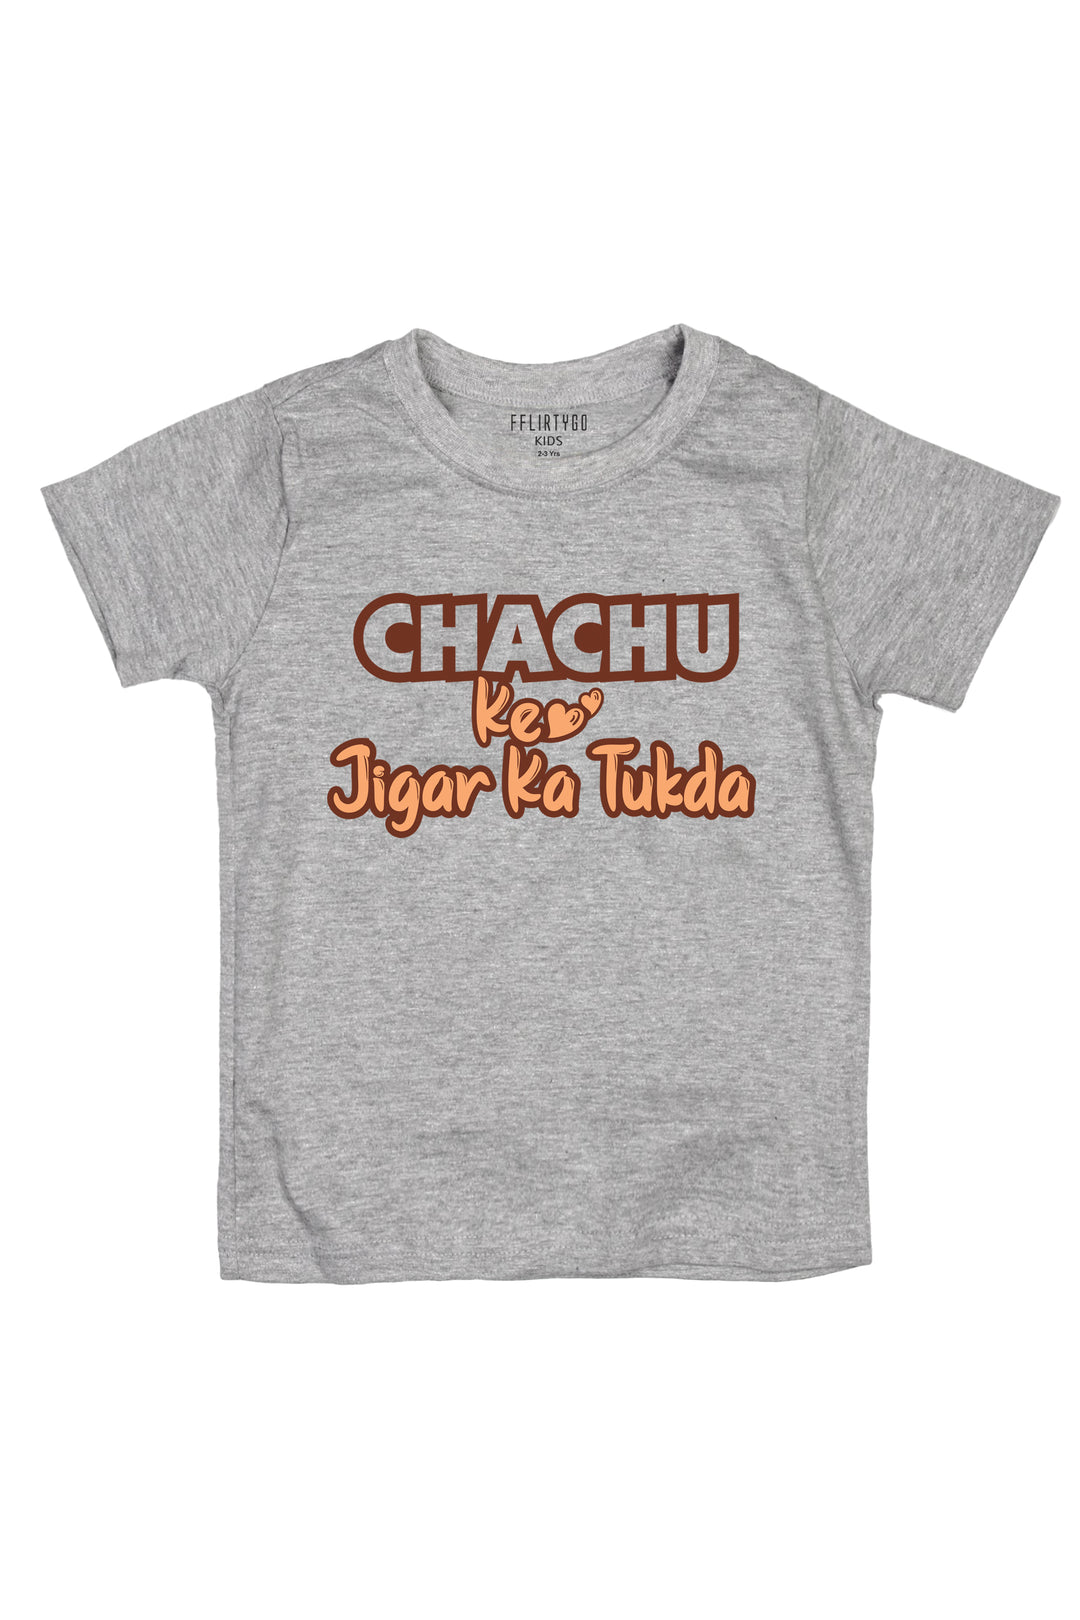 Chachu Ke Jigar K Tukda